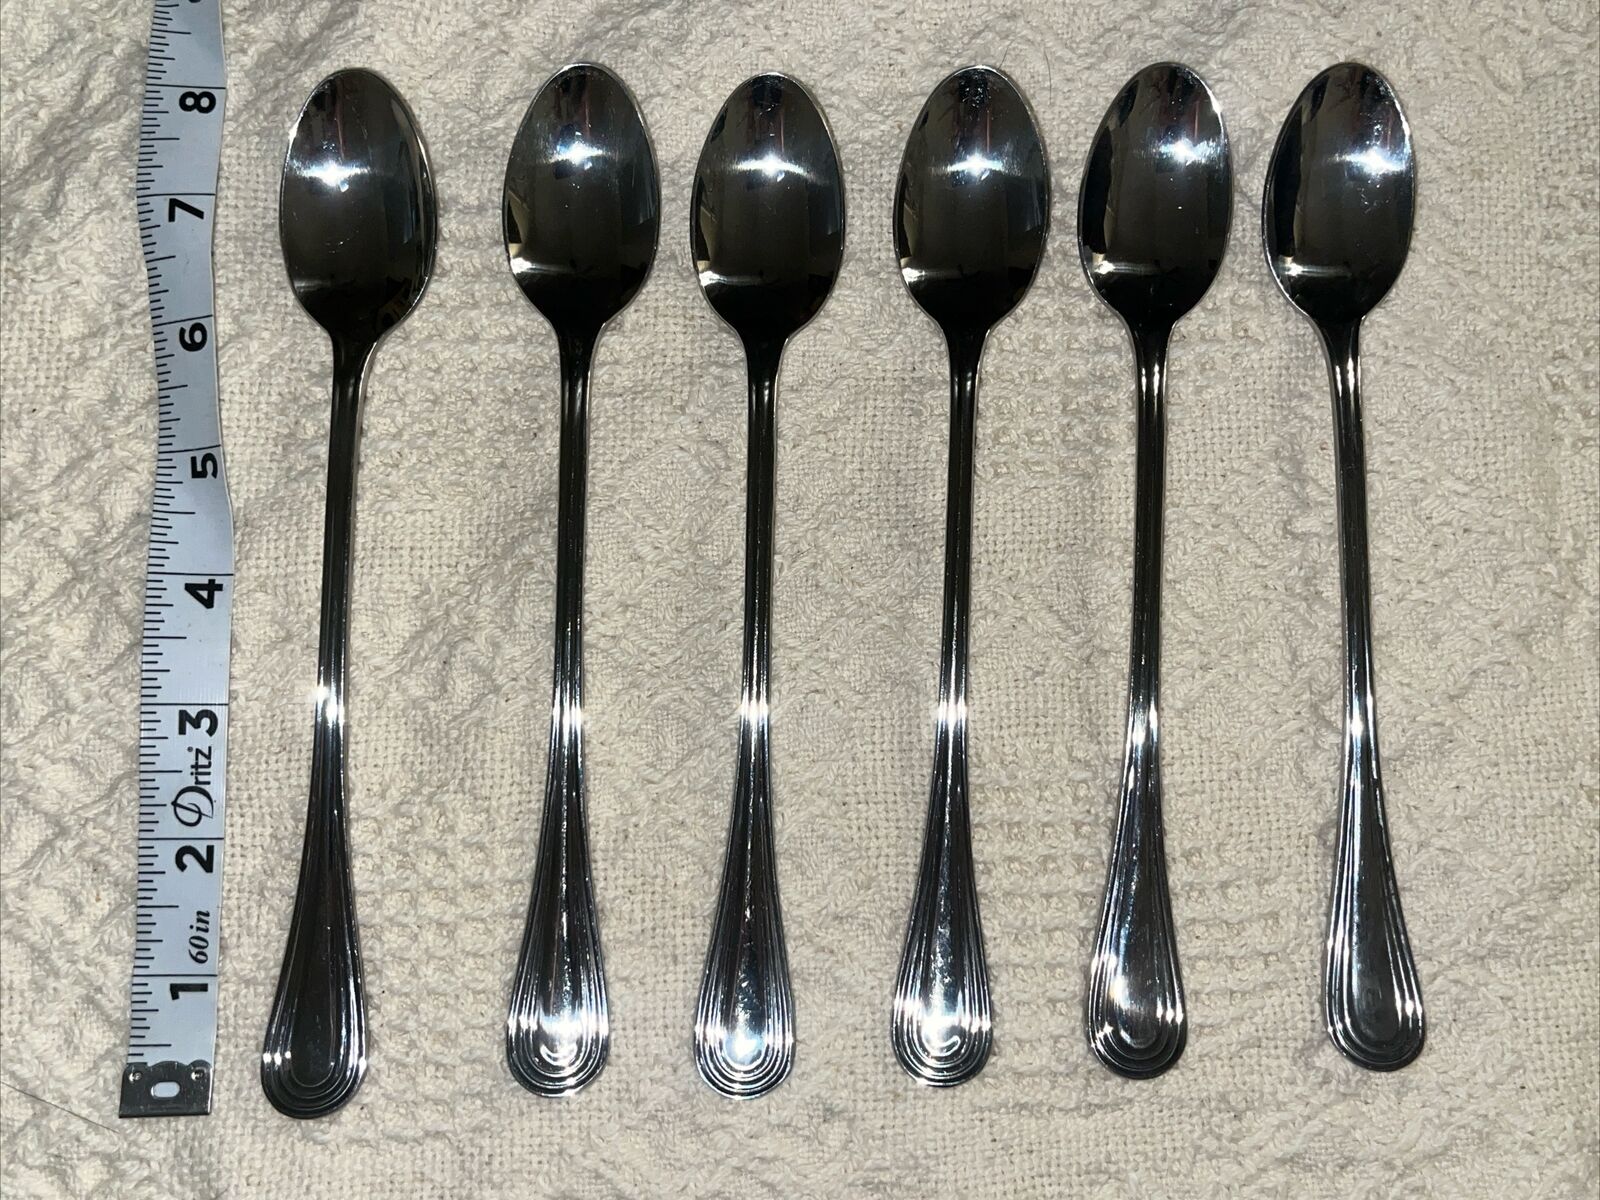 6 Vintage Brand Ware Stainless Steel Sundae Parfait Iced Tea Spoons 8” Length